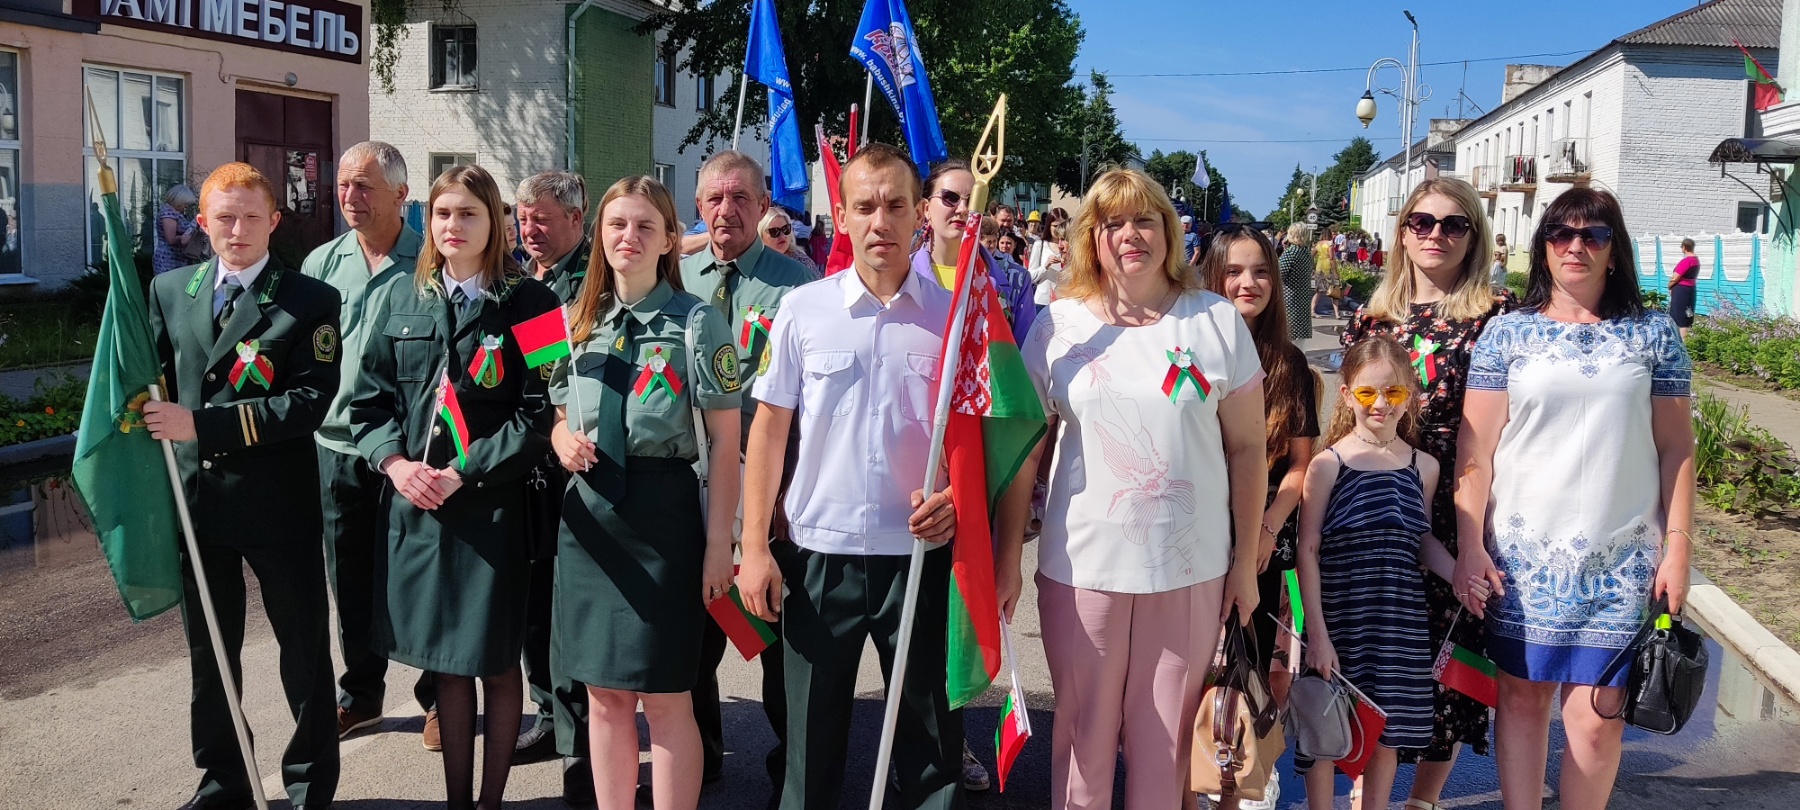 Климовщина празднует День Независимости Республики Беларусь